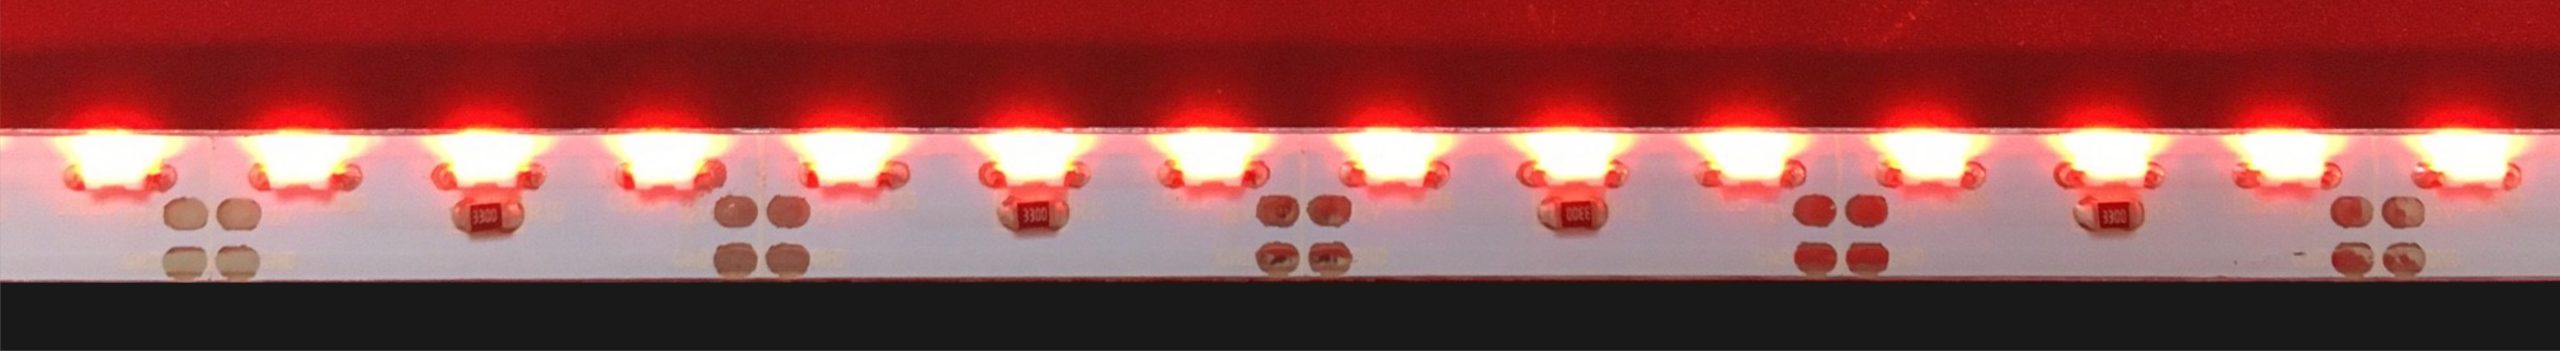 No,5 | Tecoサイド ハード基板 赤色 | 波長625nm　消費電力：4.08W | 500㎜：60球で計測